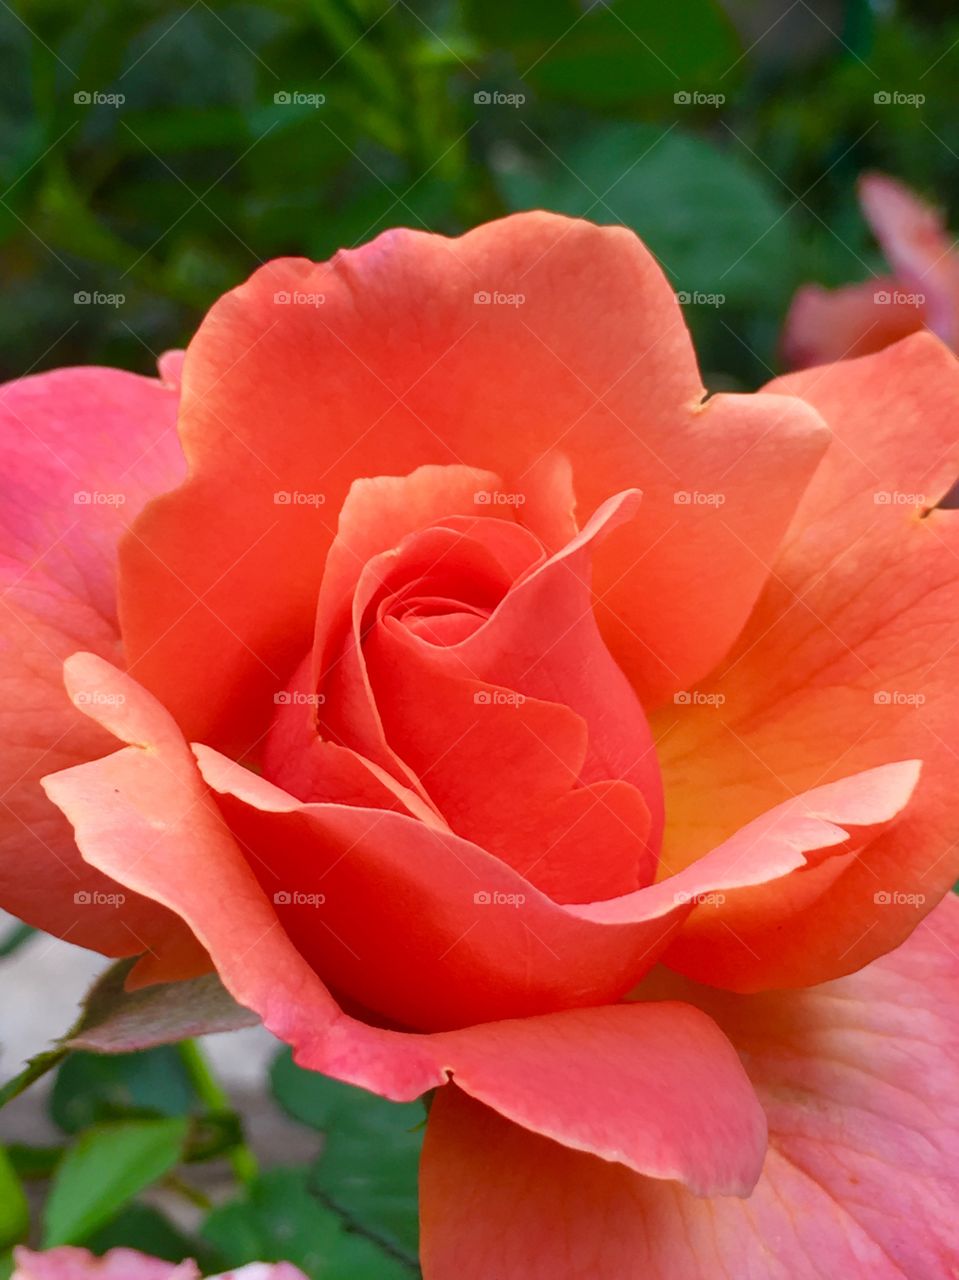 Peach colored rose. Elegant rose,soft petals 